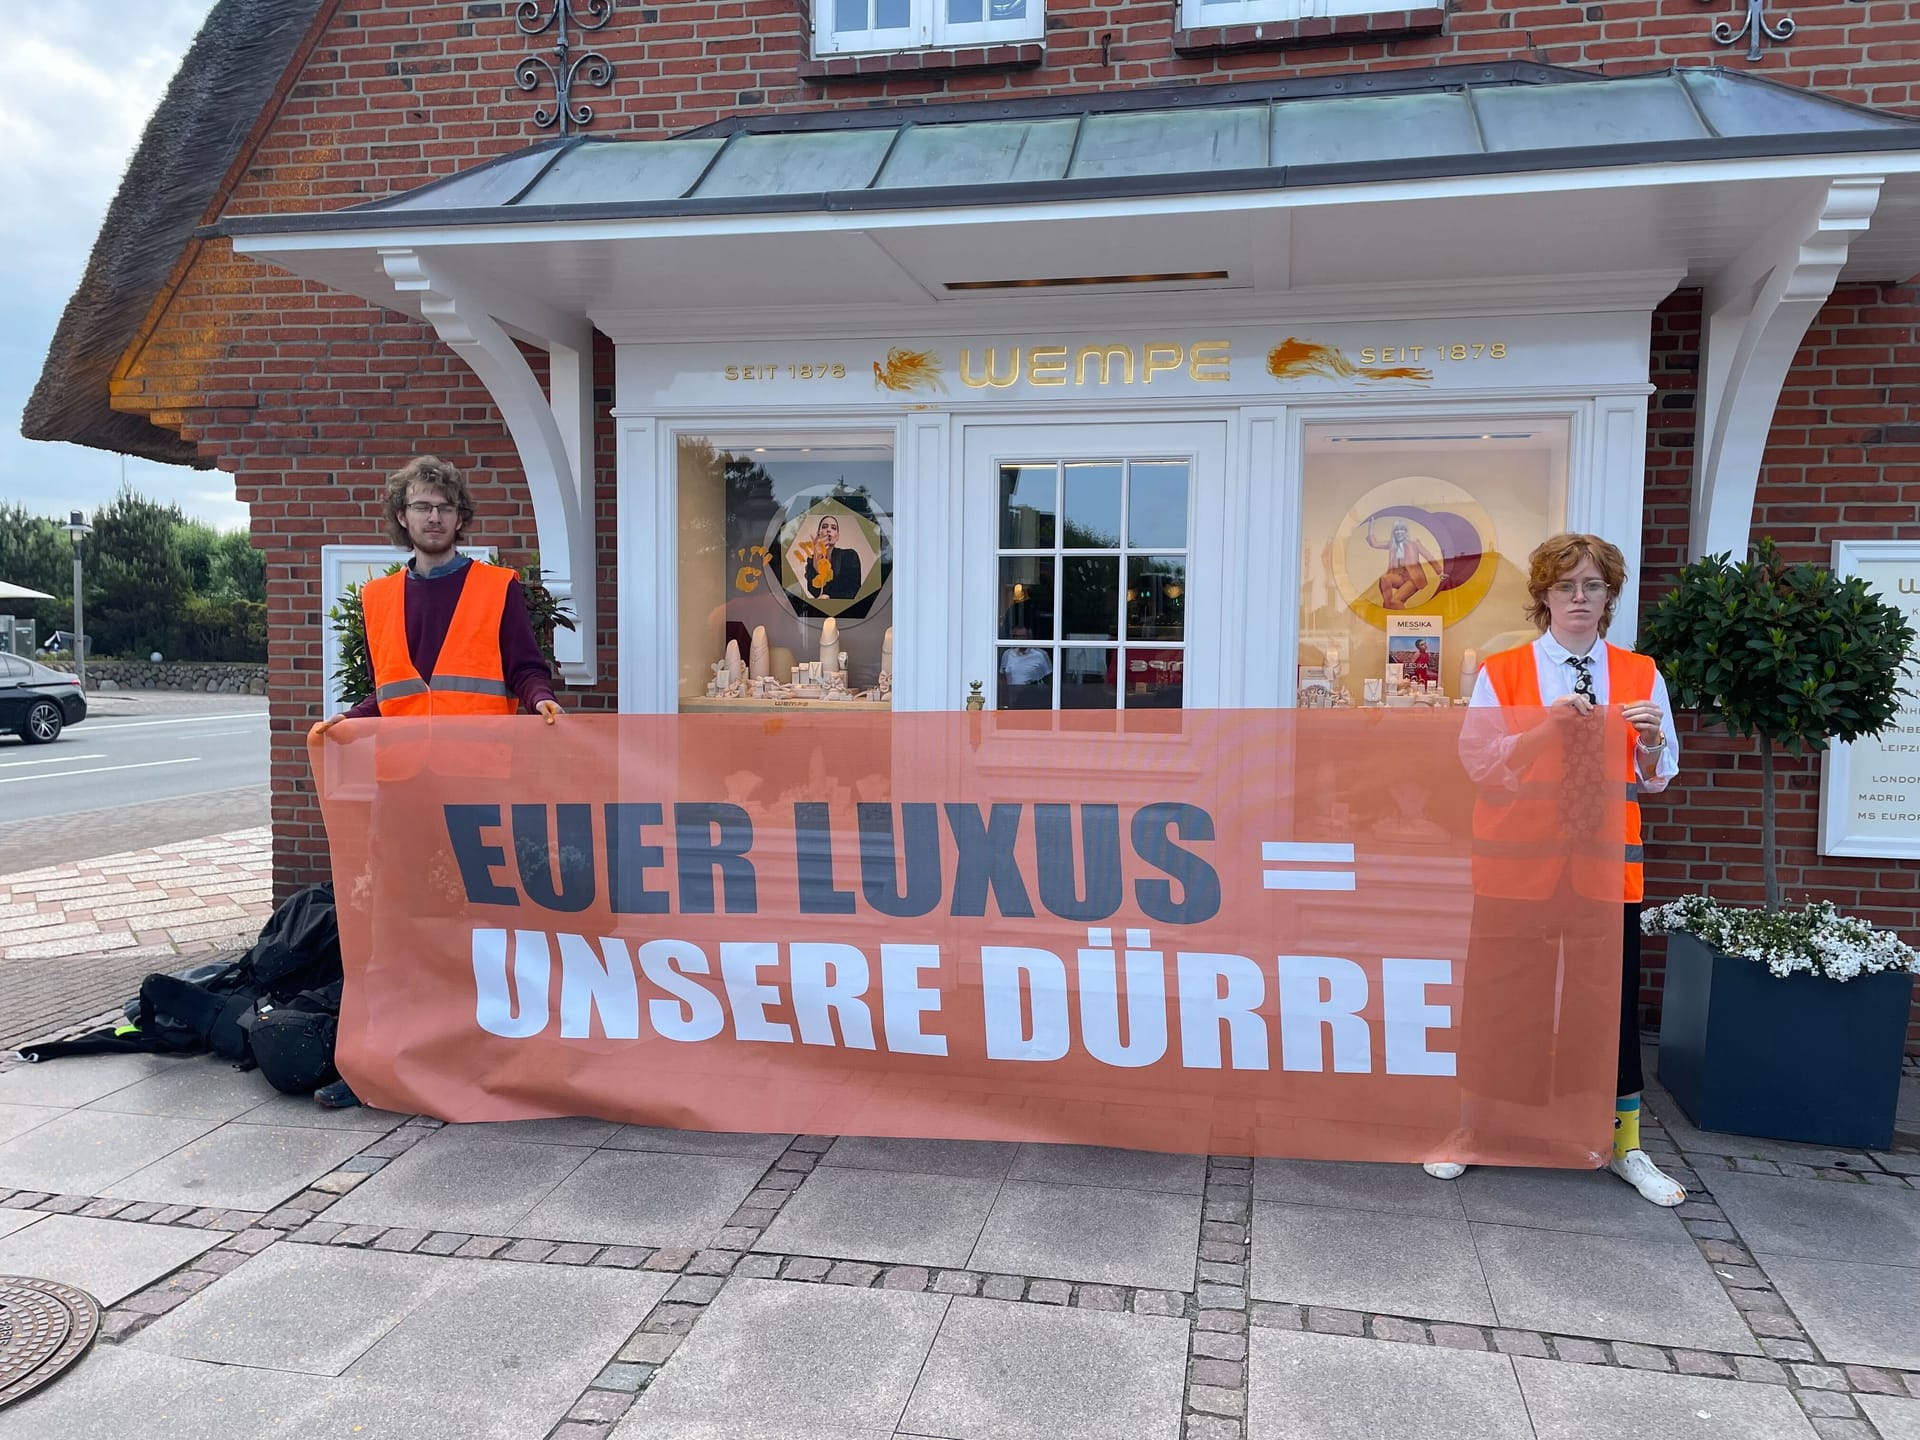 Davor positionierten sich die Aktivisten mit einem Plakat, auf dem "Euer Luxus = unsere Dürre" steht.